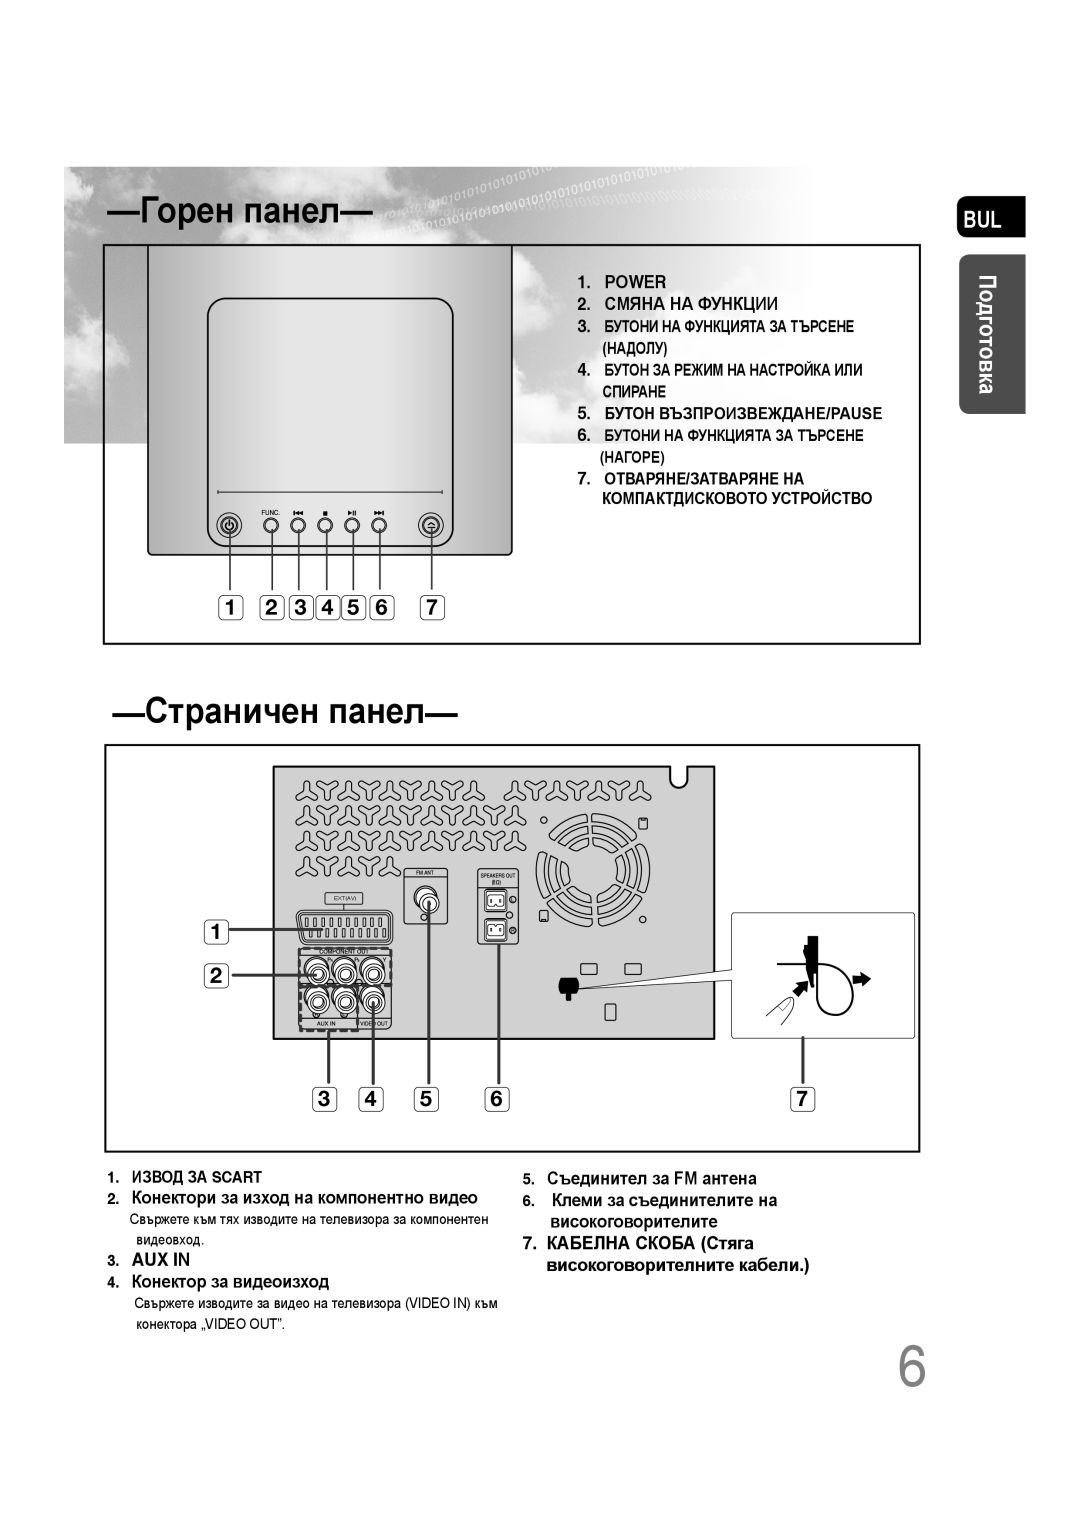 Samsung MM-C330D/EDC Горен панел, Страничен панел, Подготовка, Power, Смяна На Функции, 5. Съединител за FM антена, Aux In 